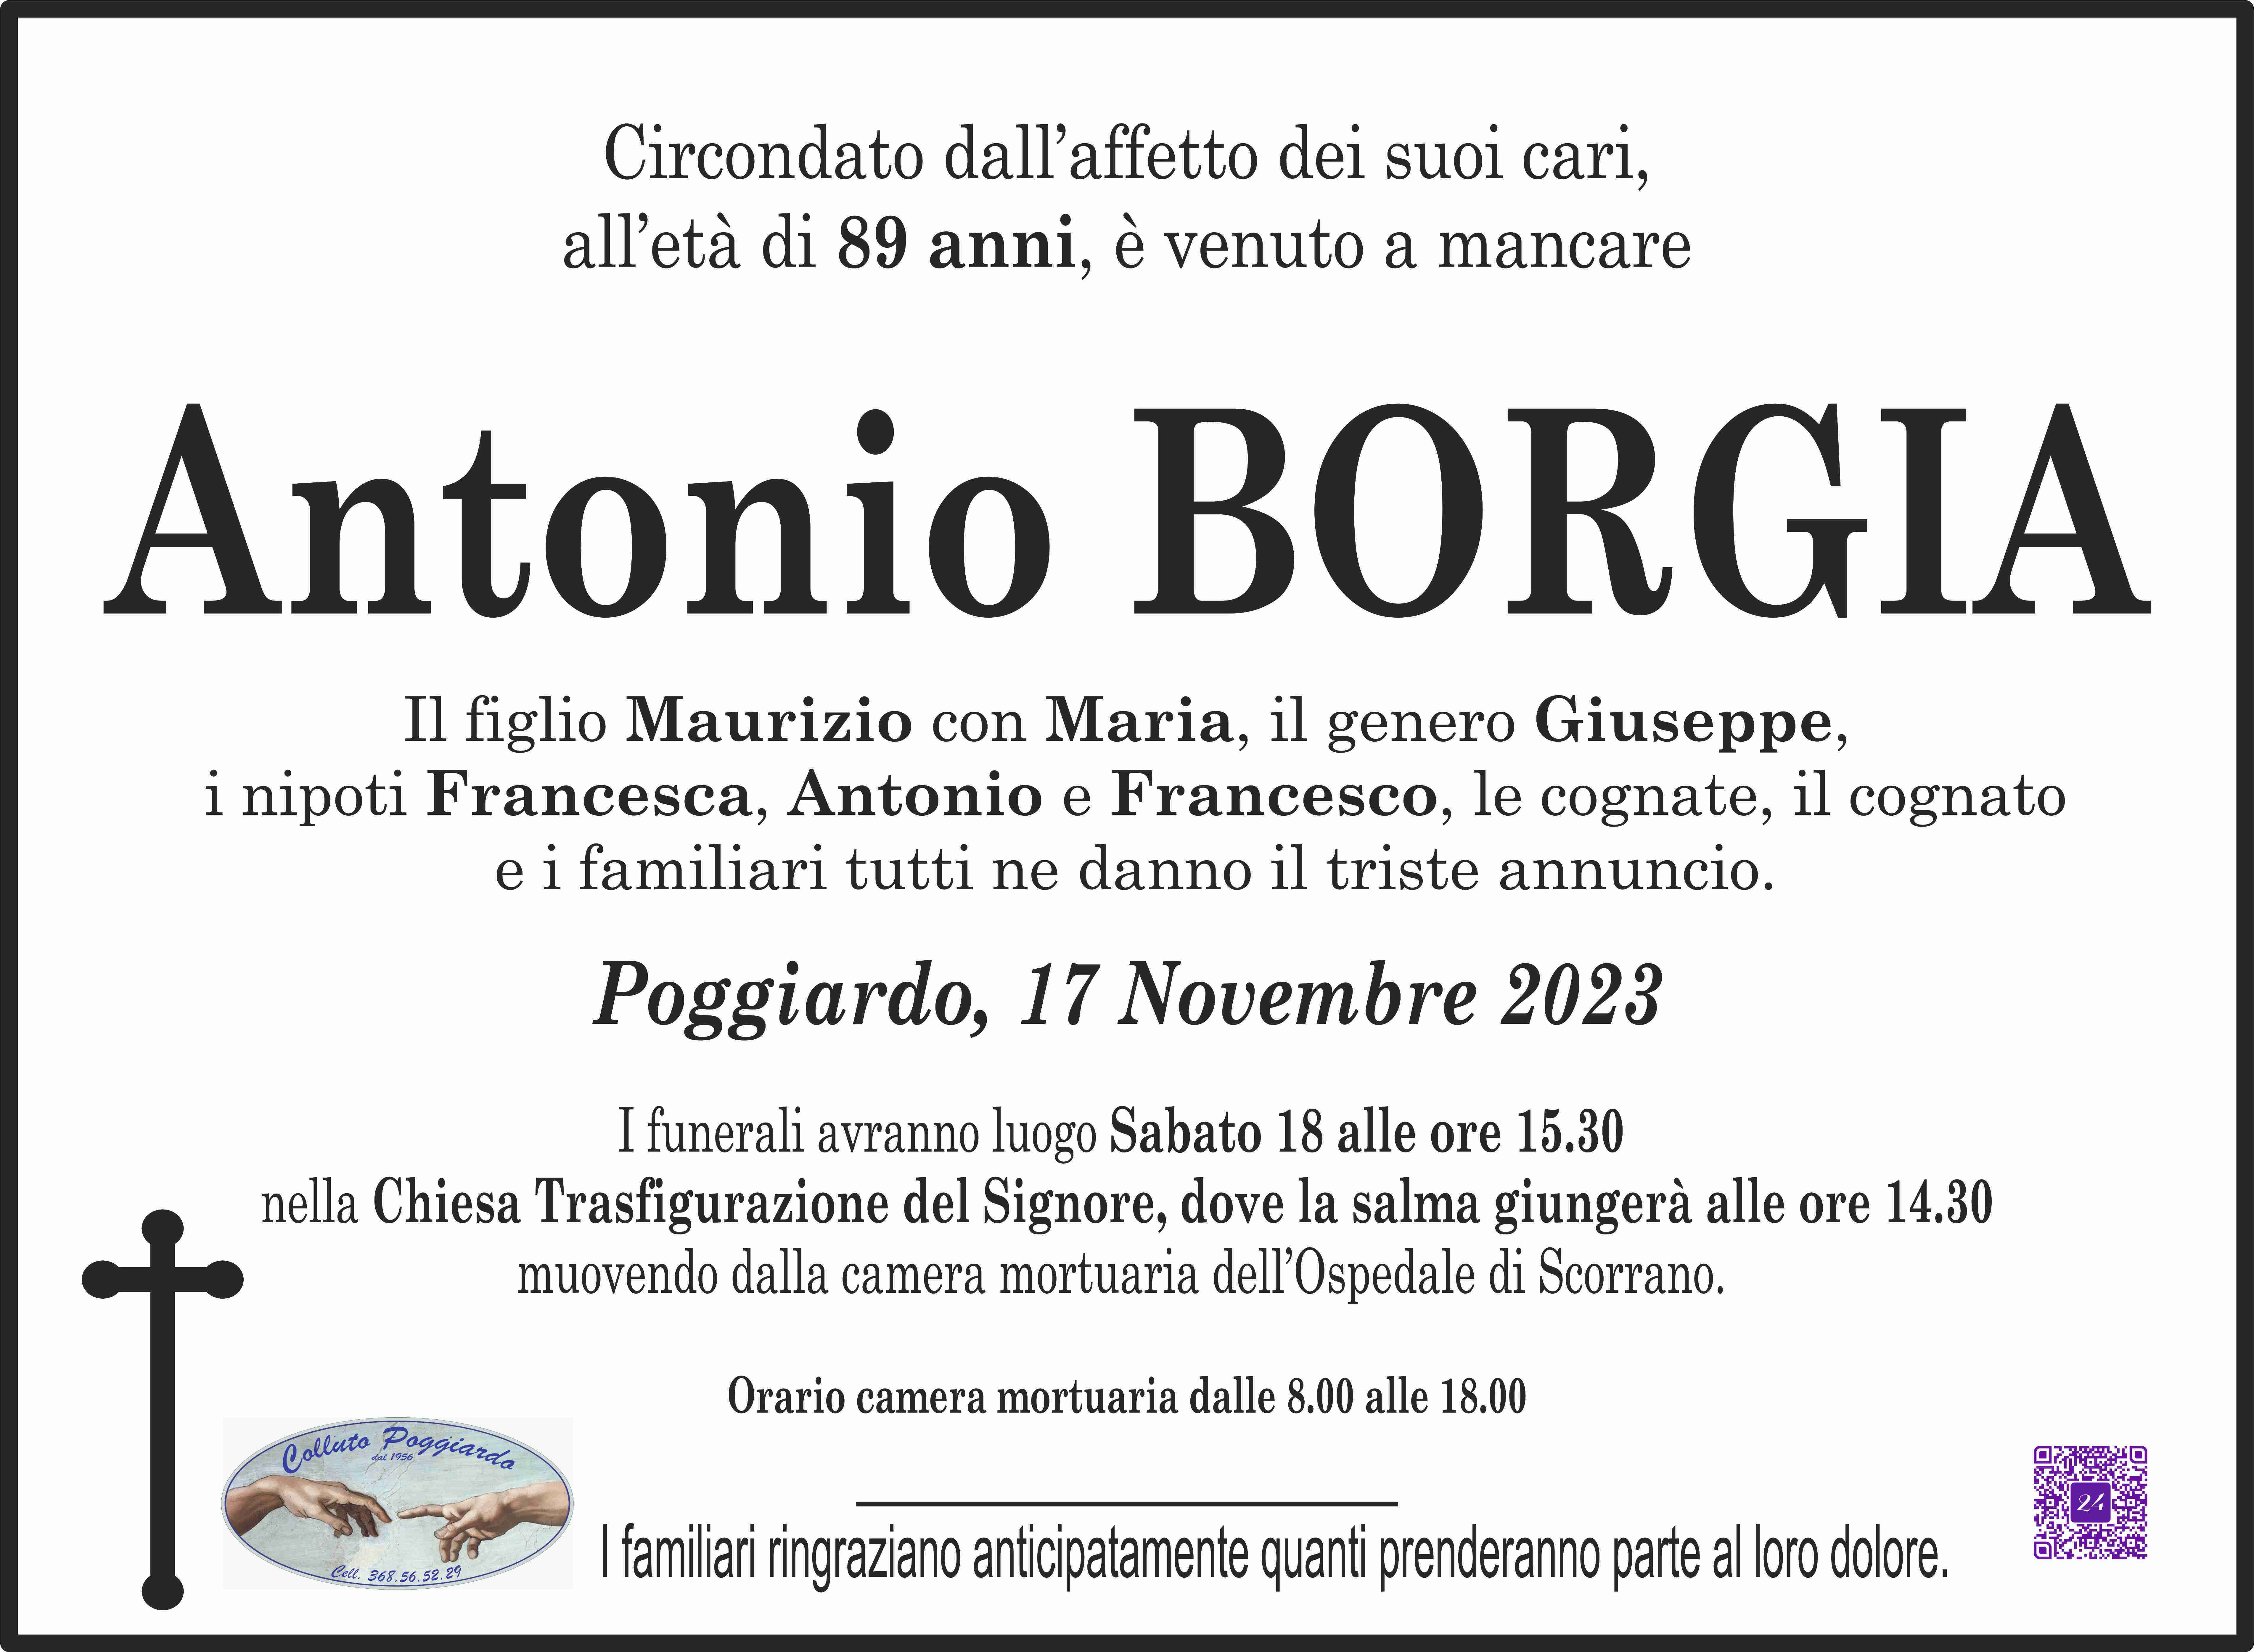 Antonio Borgia